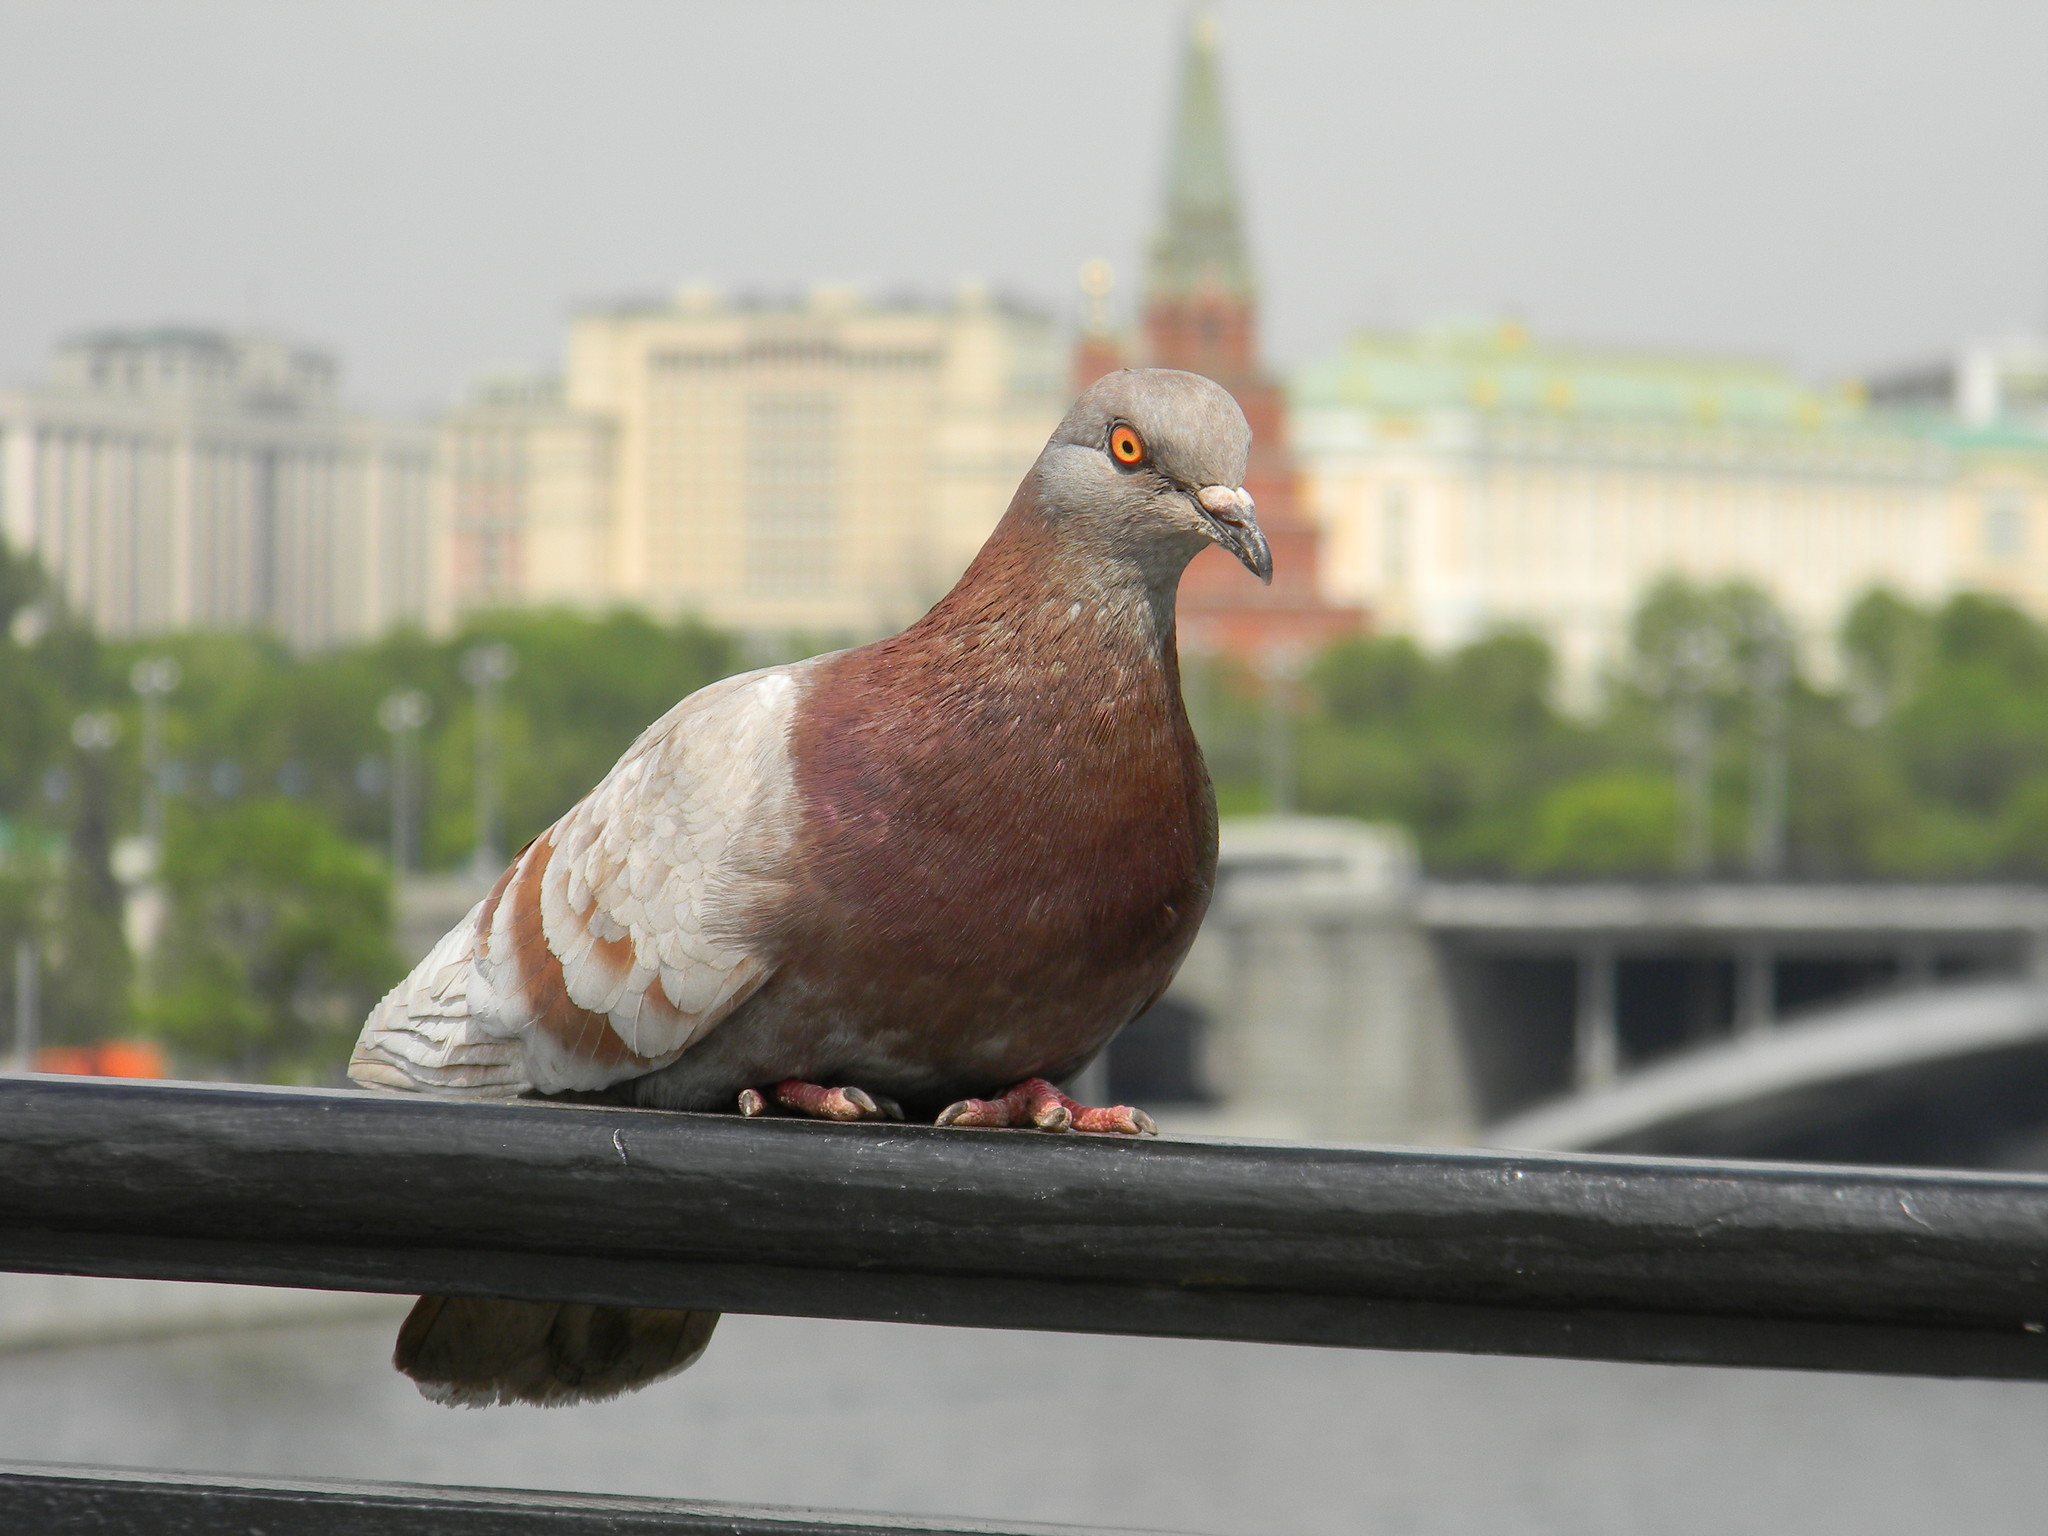 Какой болезнью может заразить человека городской голубь?